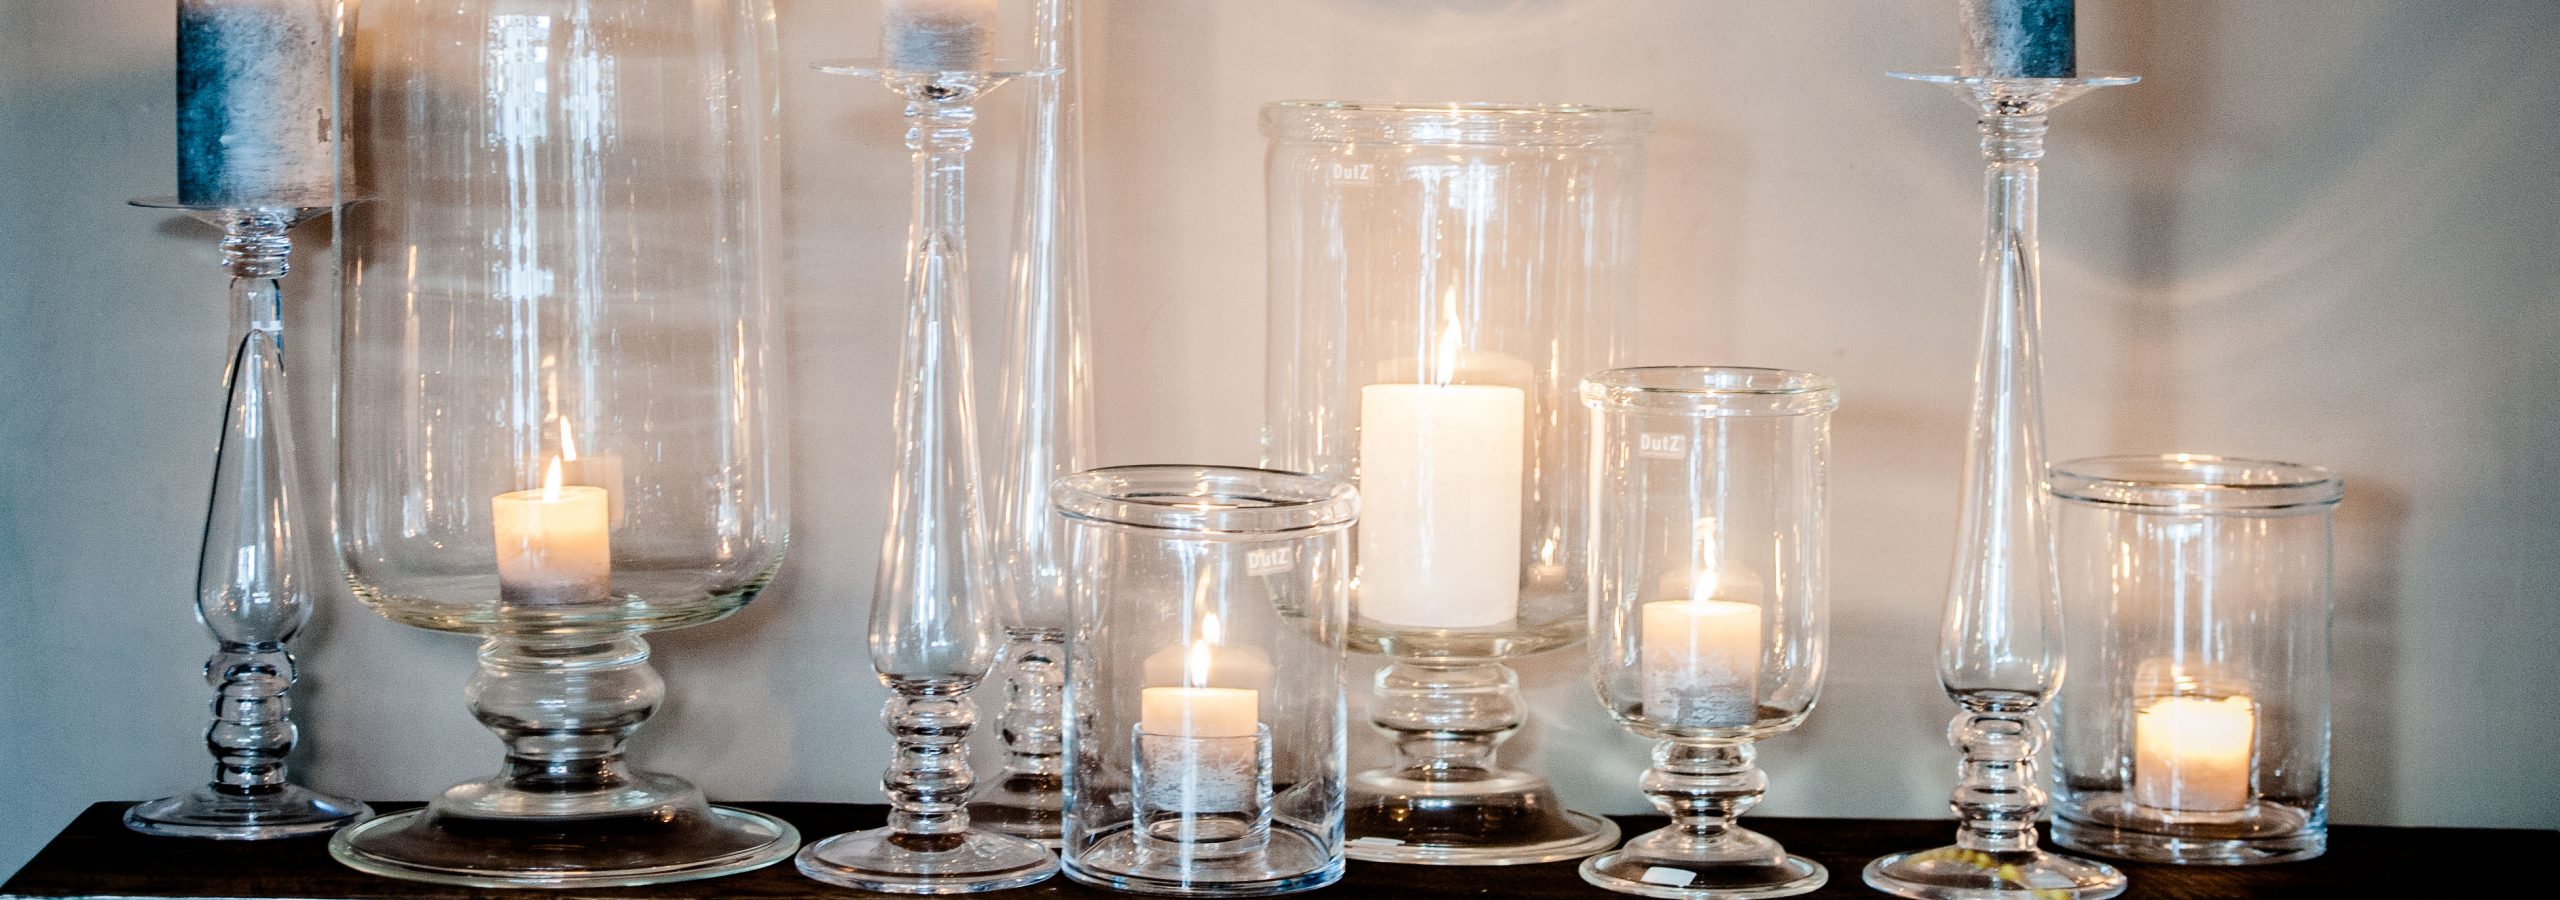 Glas kerzenhalter und windlichte mit kerzen auf ein kleine tisch